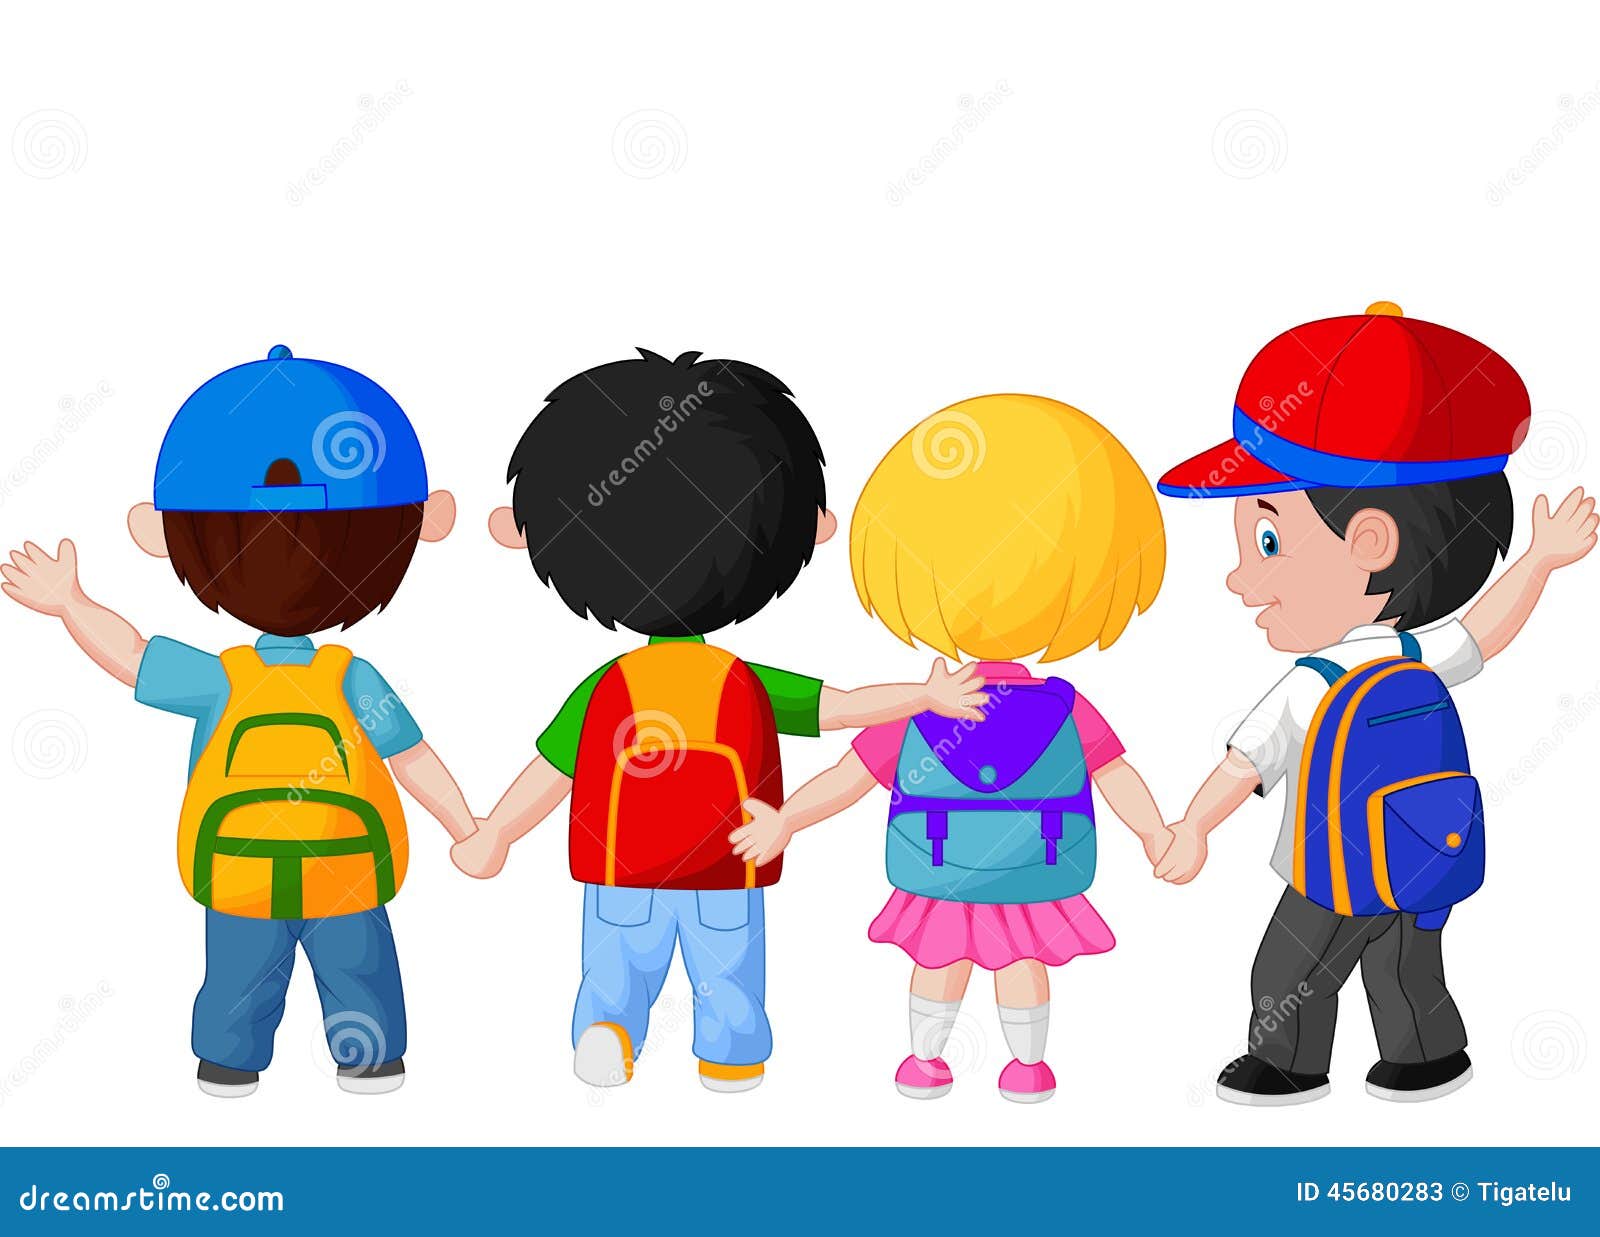 卡通小孩手牵着手围成一圈插画图片素材_ID:419918749-Veer图库